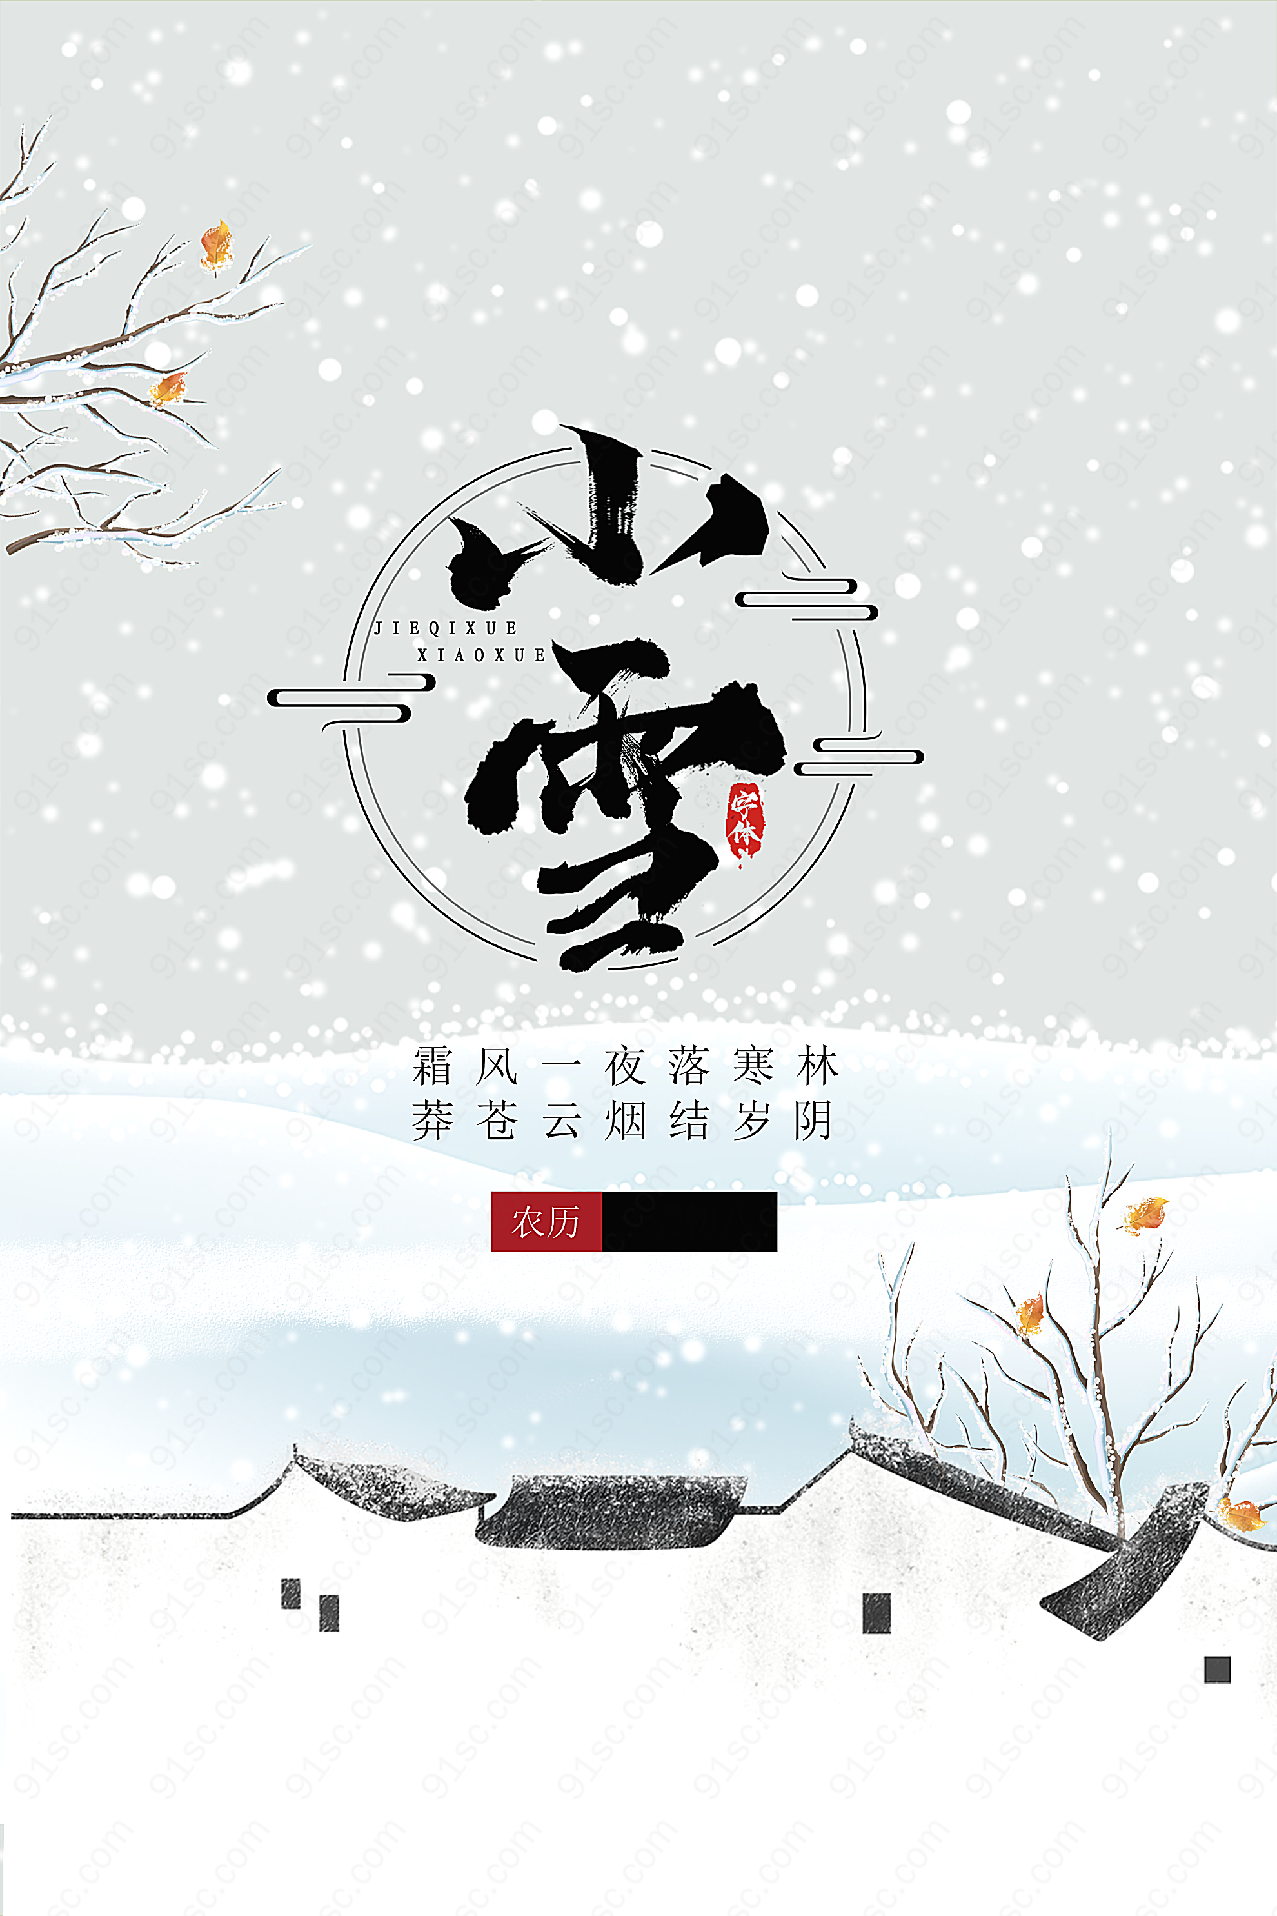 传统小雪时节海报假日节日